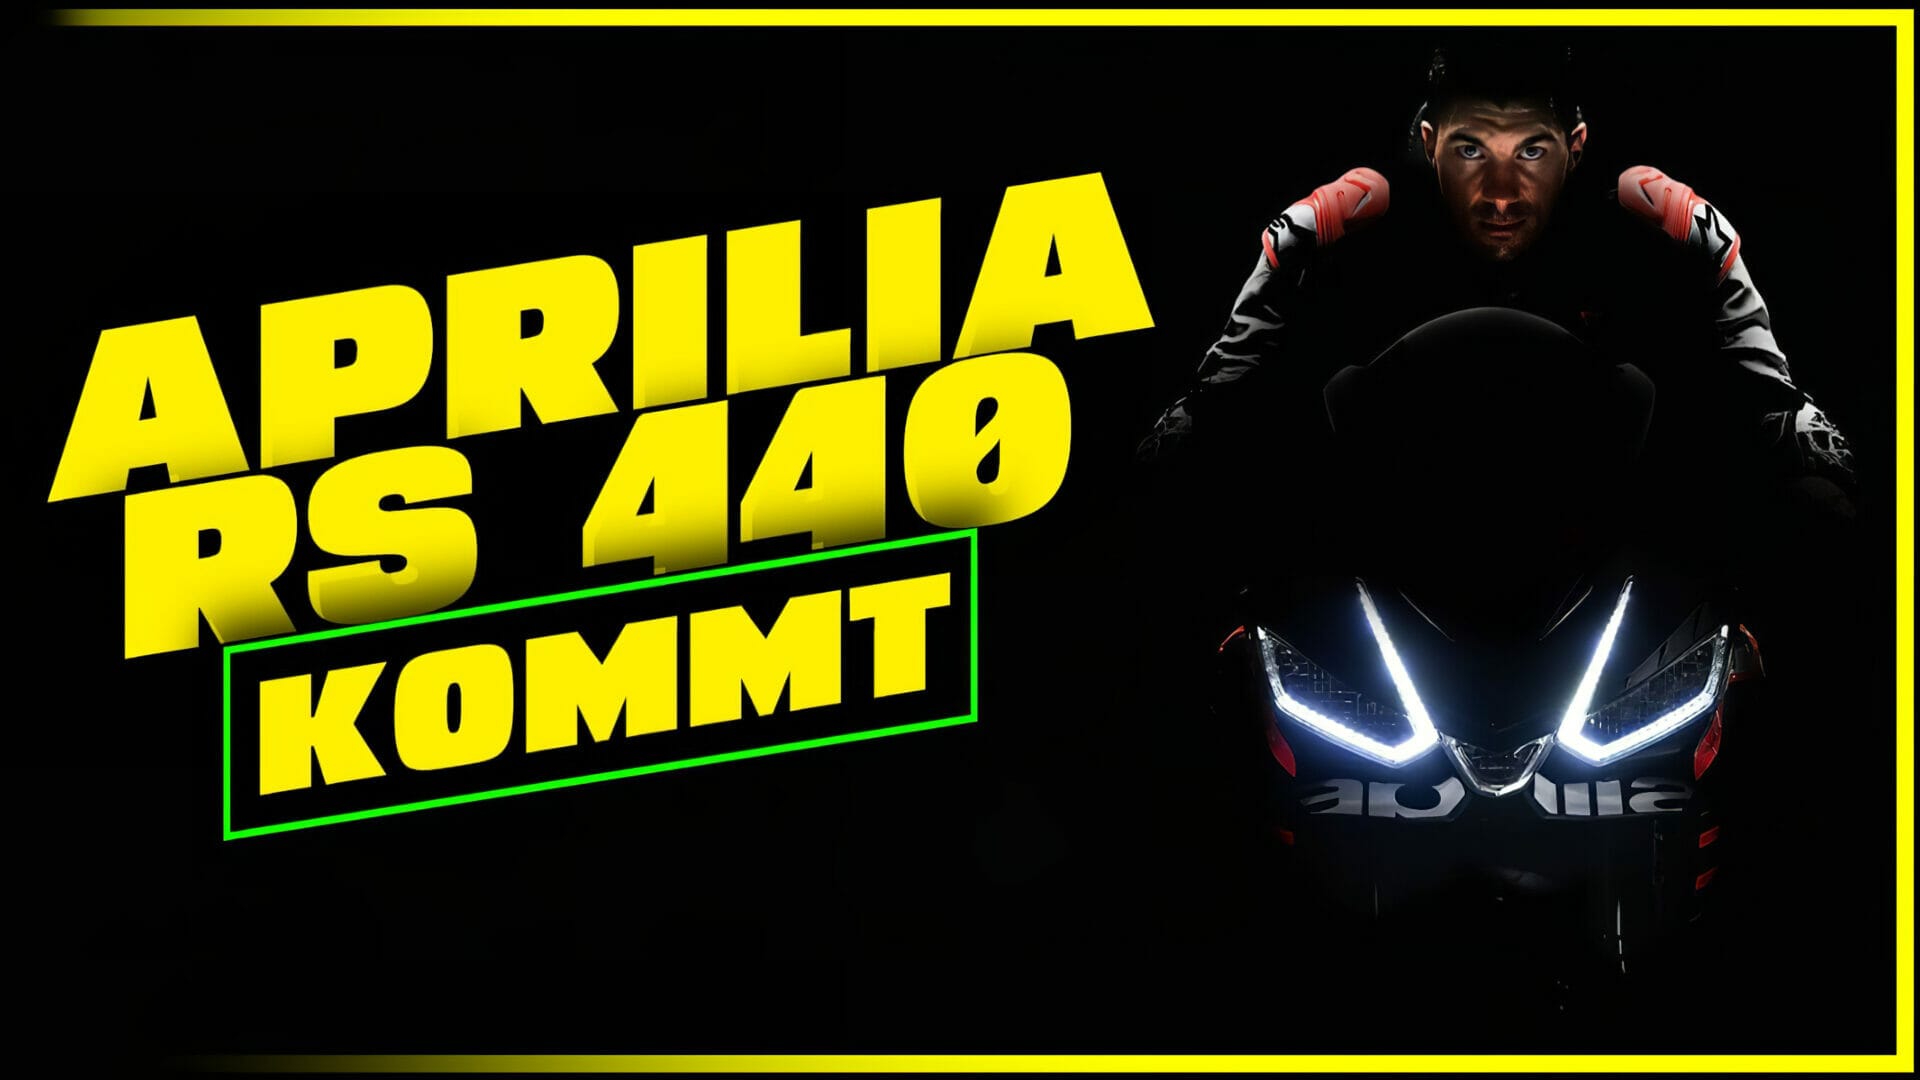 Aprilia RS 440: Die Spekulationen, Geheimnisse und Enthüllungen vor dem großen Debüt